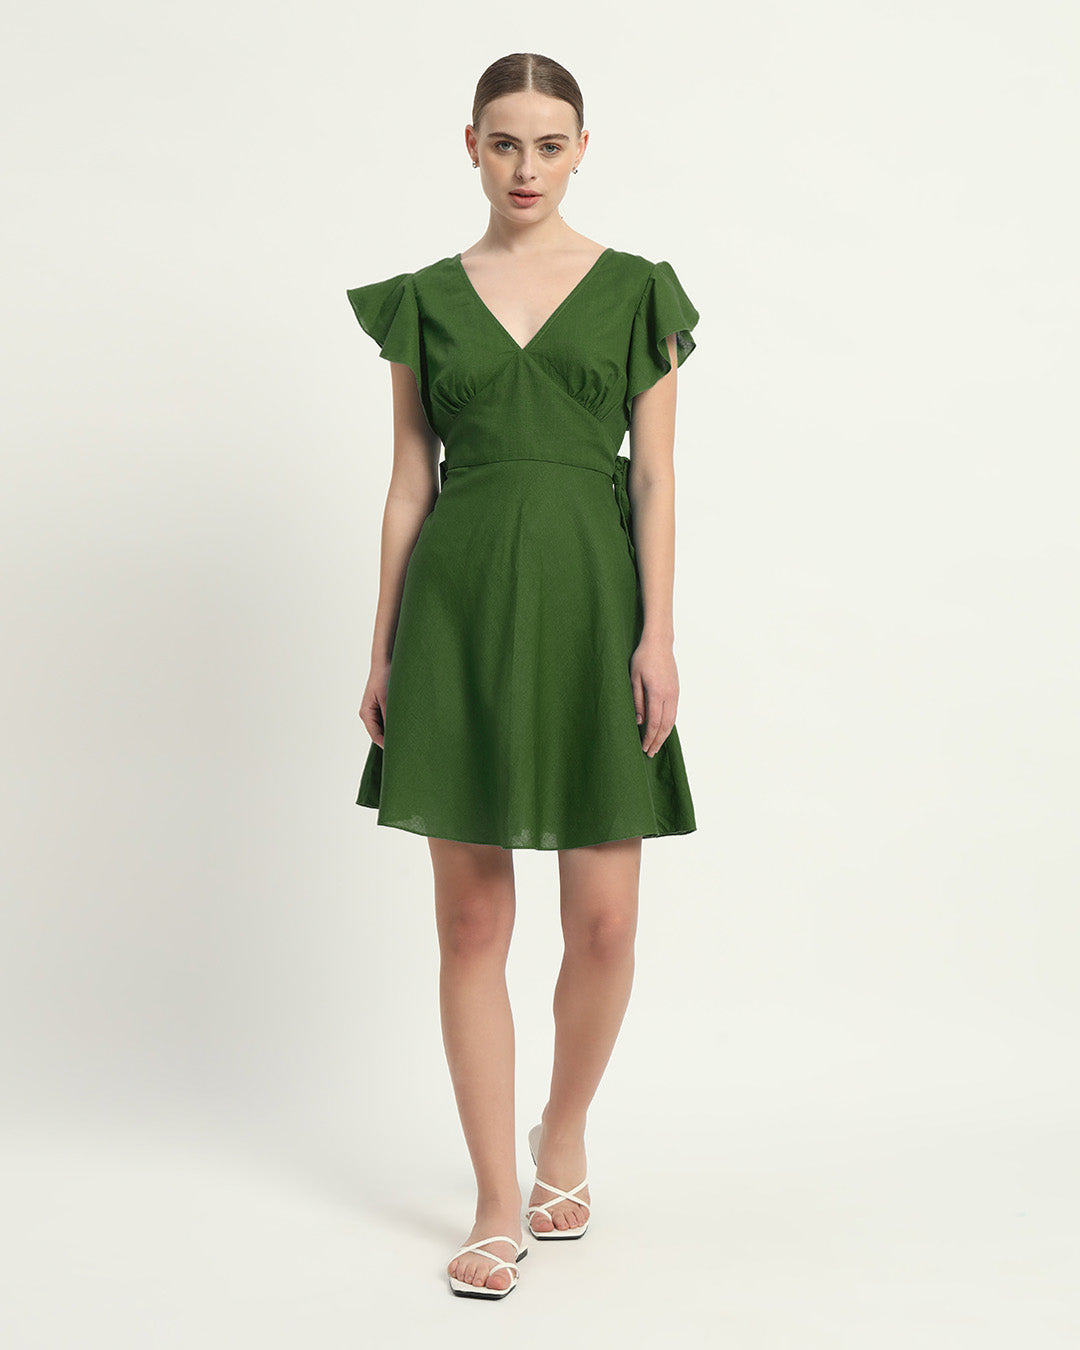 The Emerald Fairlie Cotton Dress